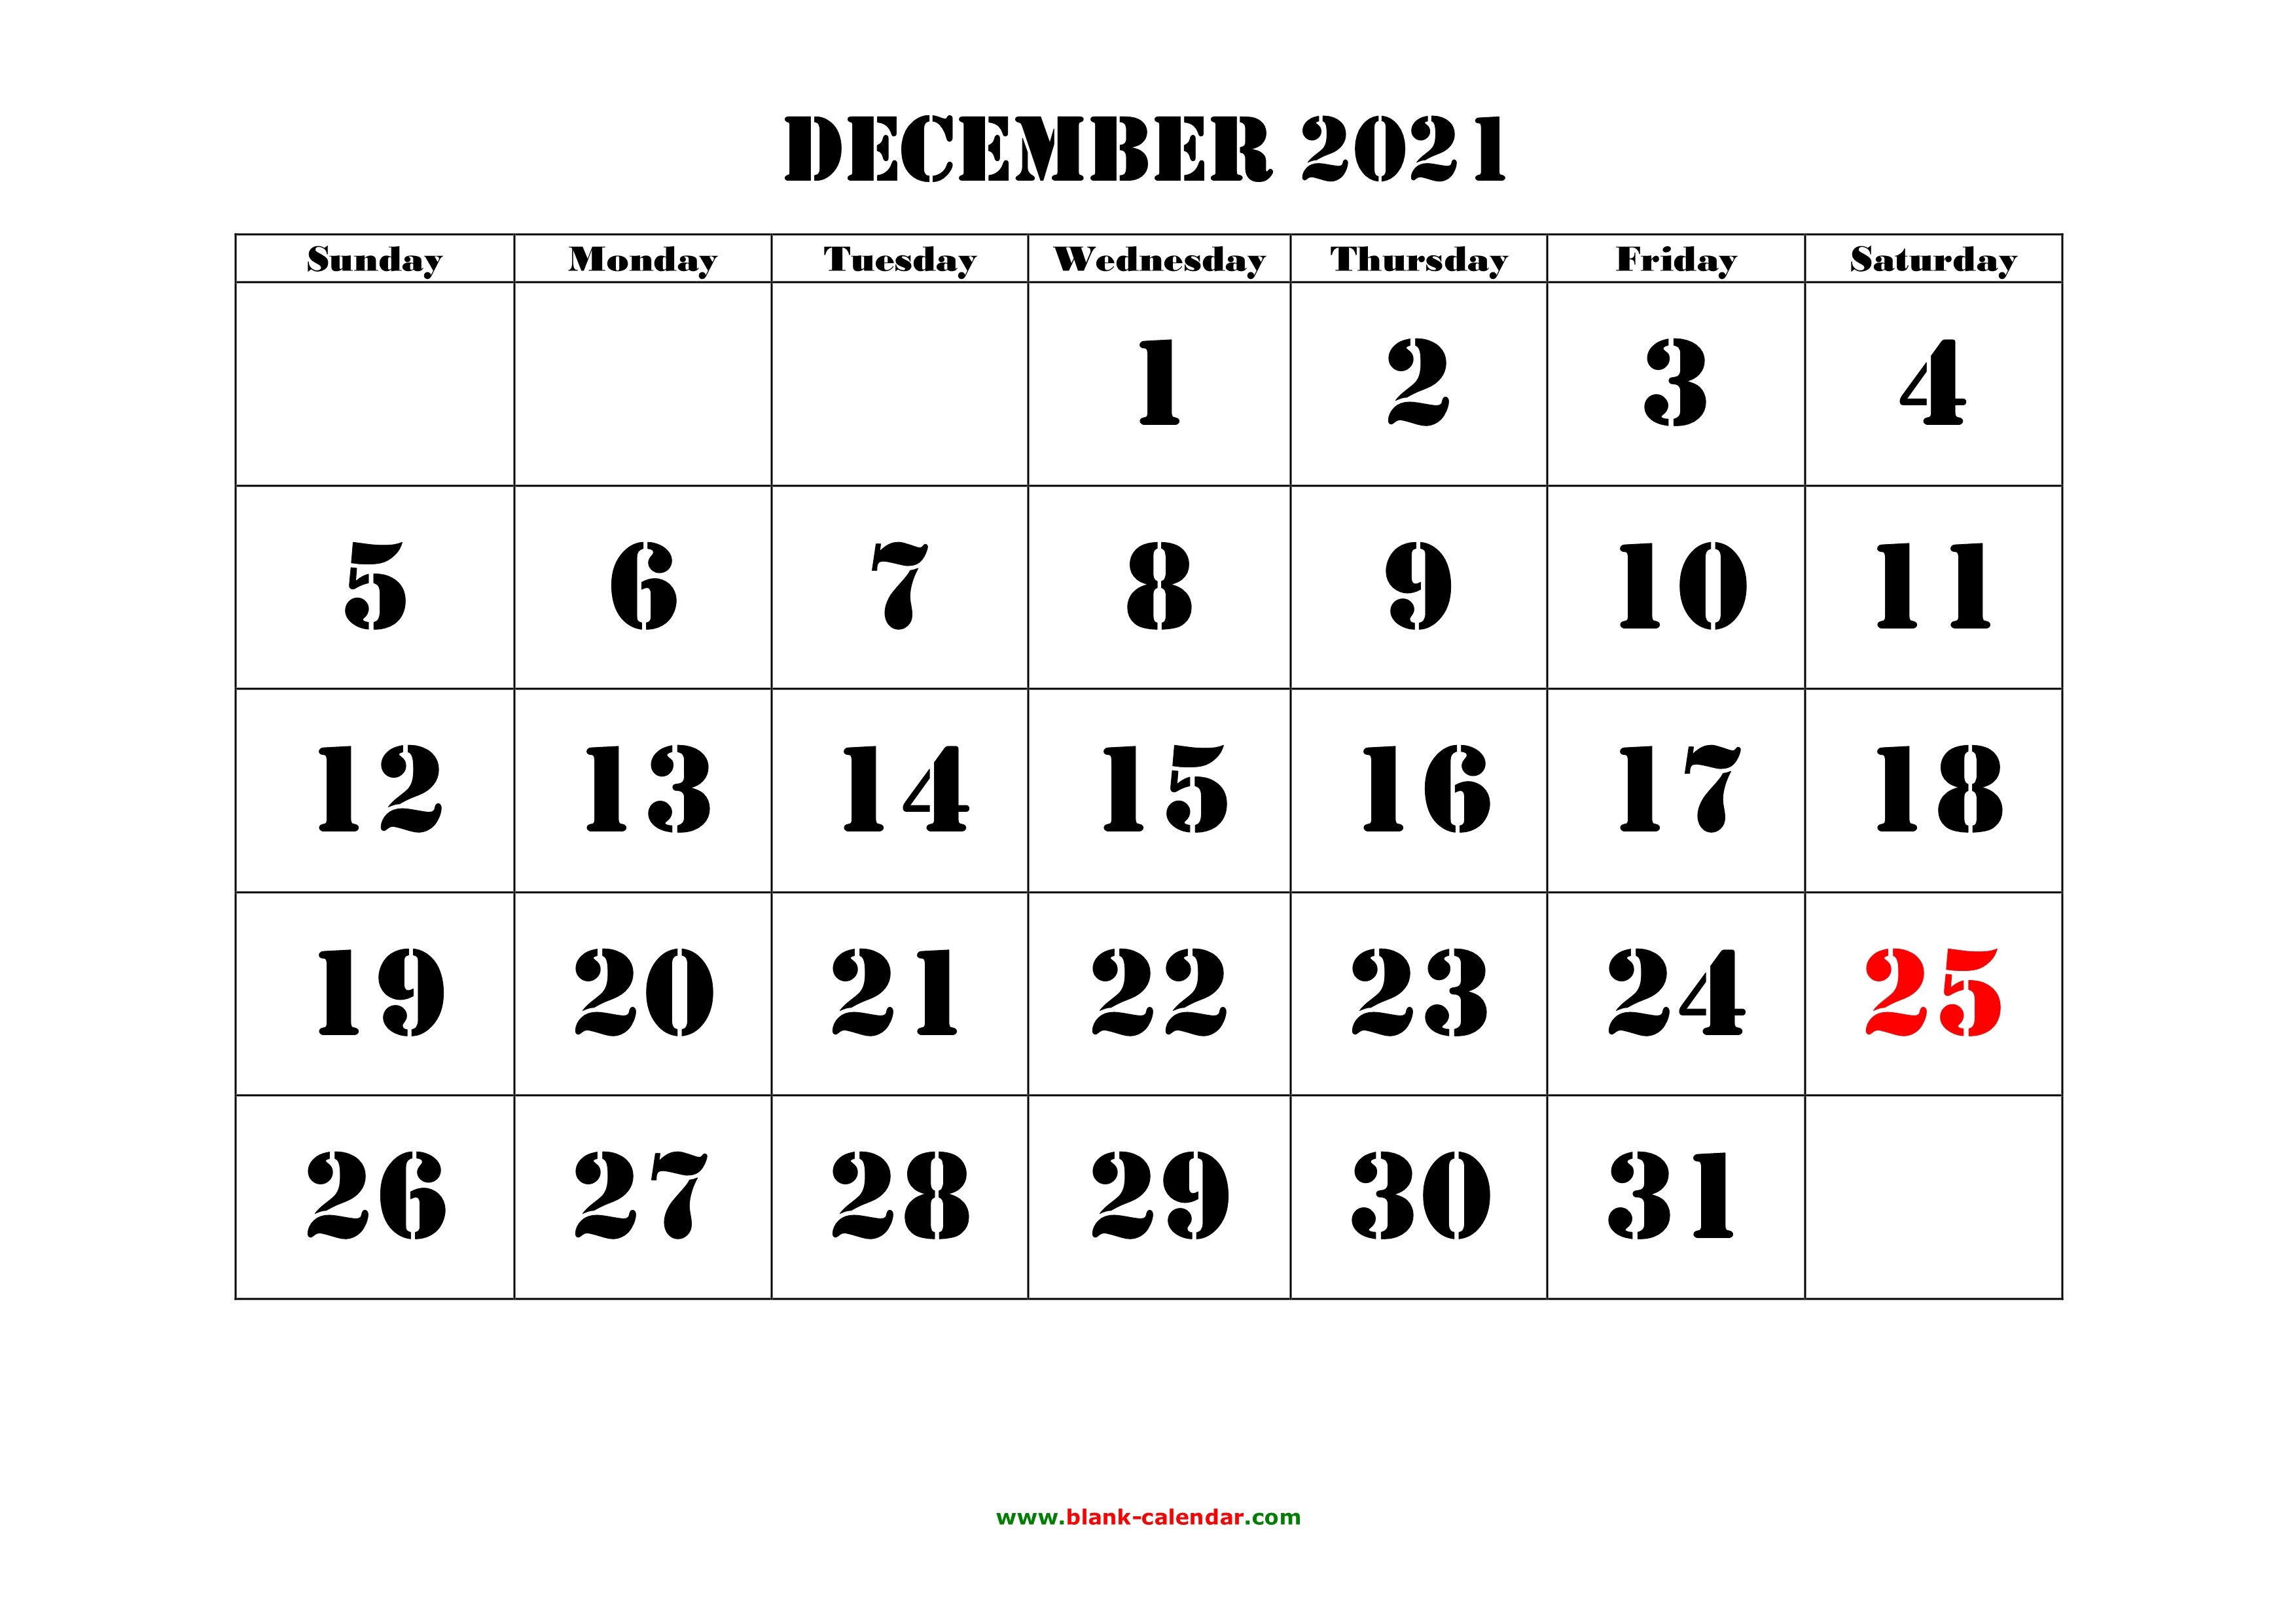 dec 2021 calendar with holidays Free Download Printable December 2021 Calendar Large Font Design Holidays On Red dec 2021 calendar with holidays